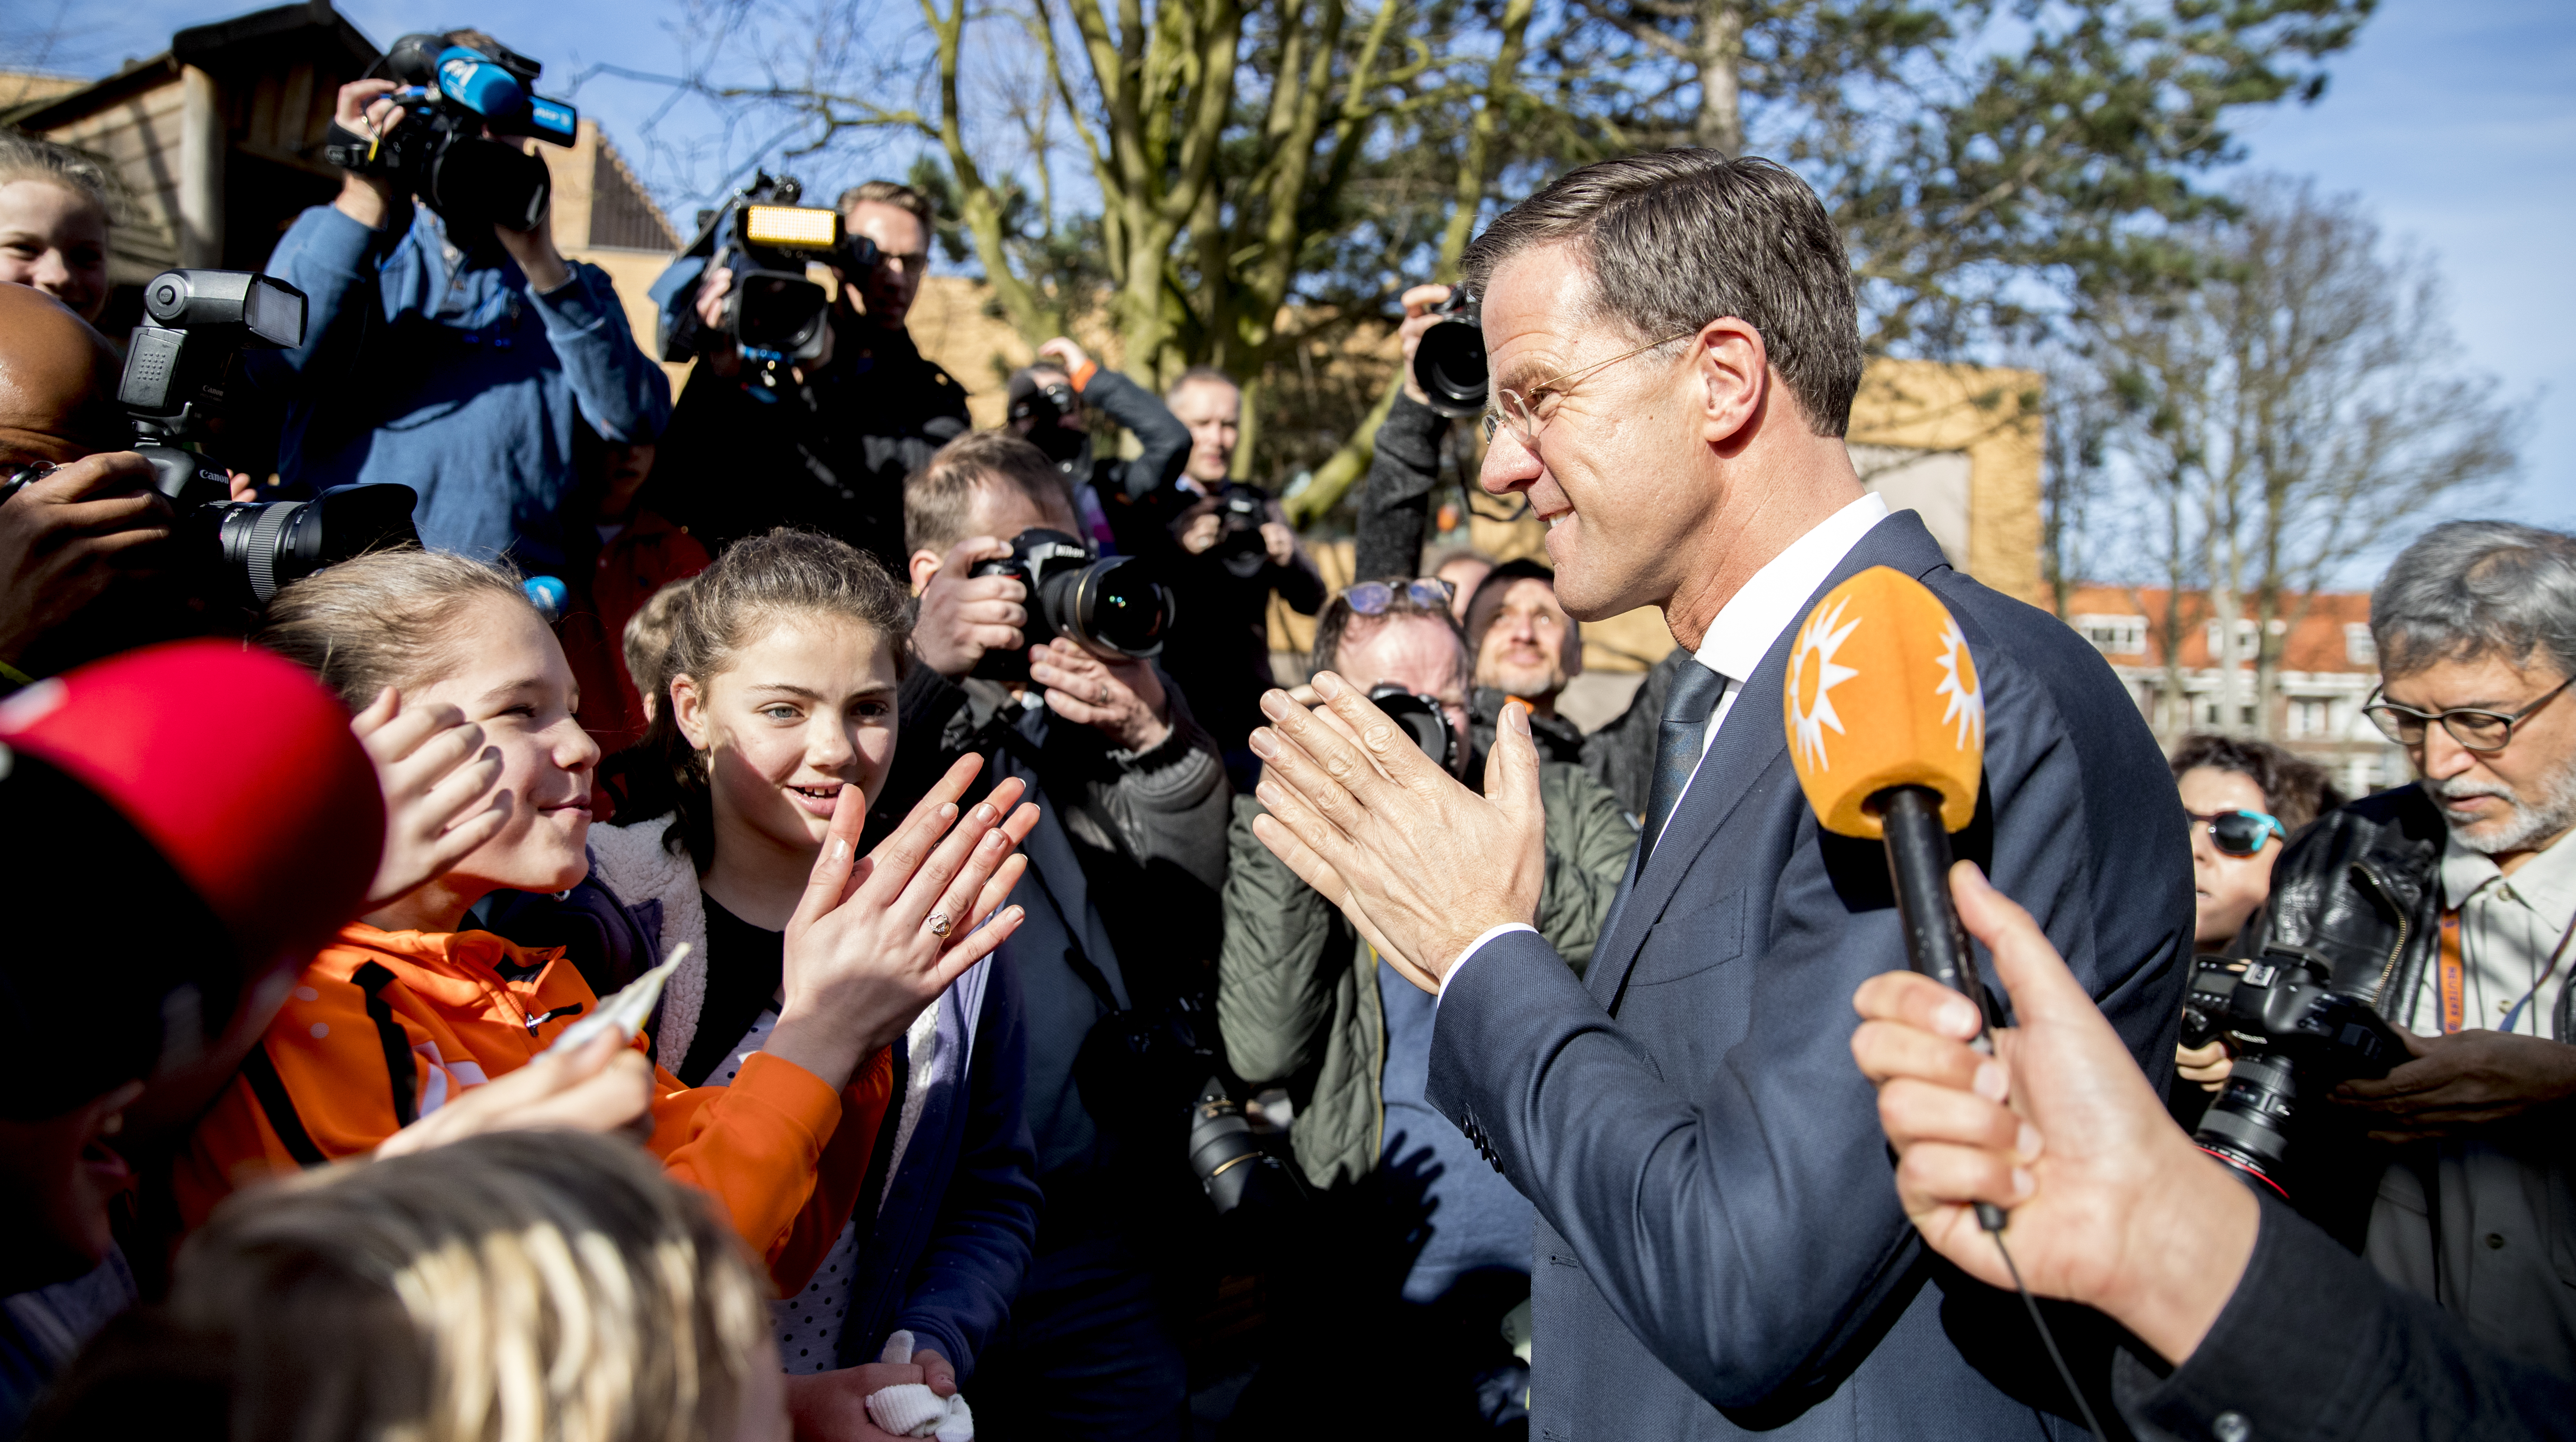 2017-03-15 10:06:40 DEN HAAG - VVD-leider Mark Rutte praat met kinderen na het uitbrengen van zijn stem voor de Tweede Kamerverkiezingen op de basisschool Wolters. ANP JERRY LAMPEN